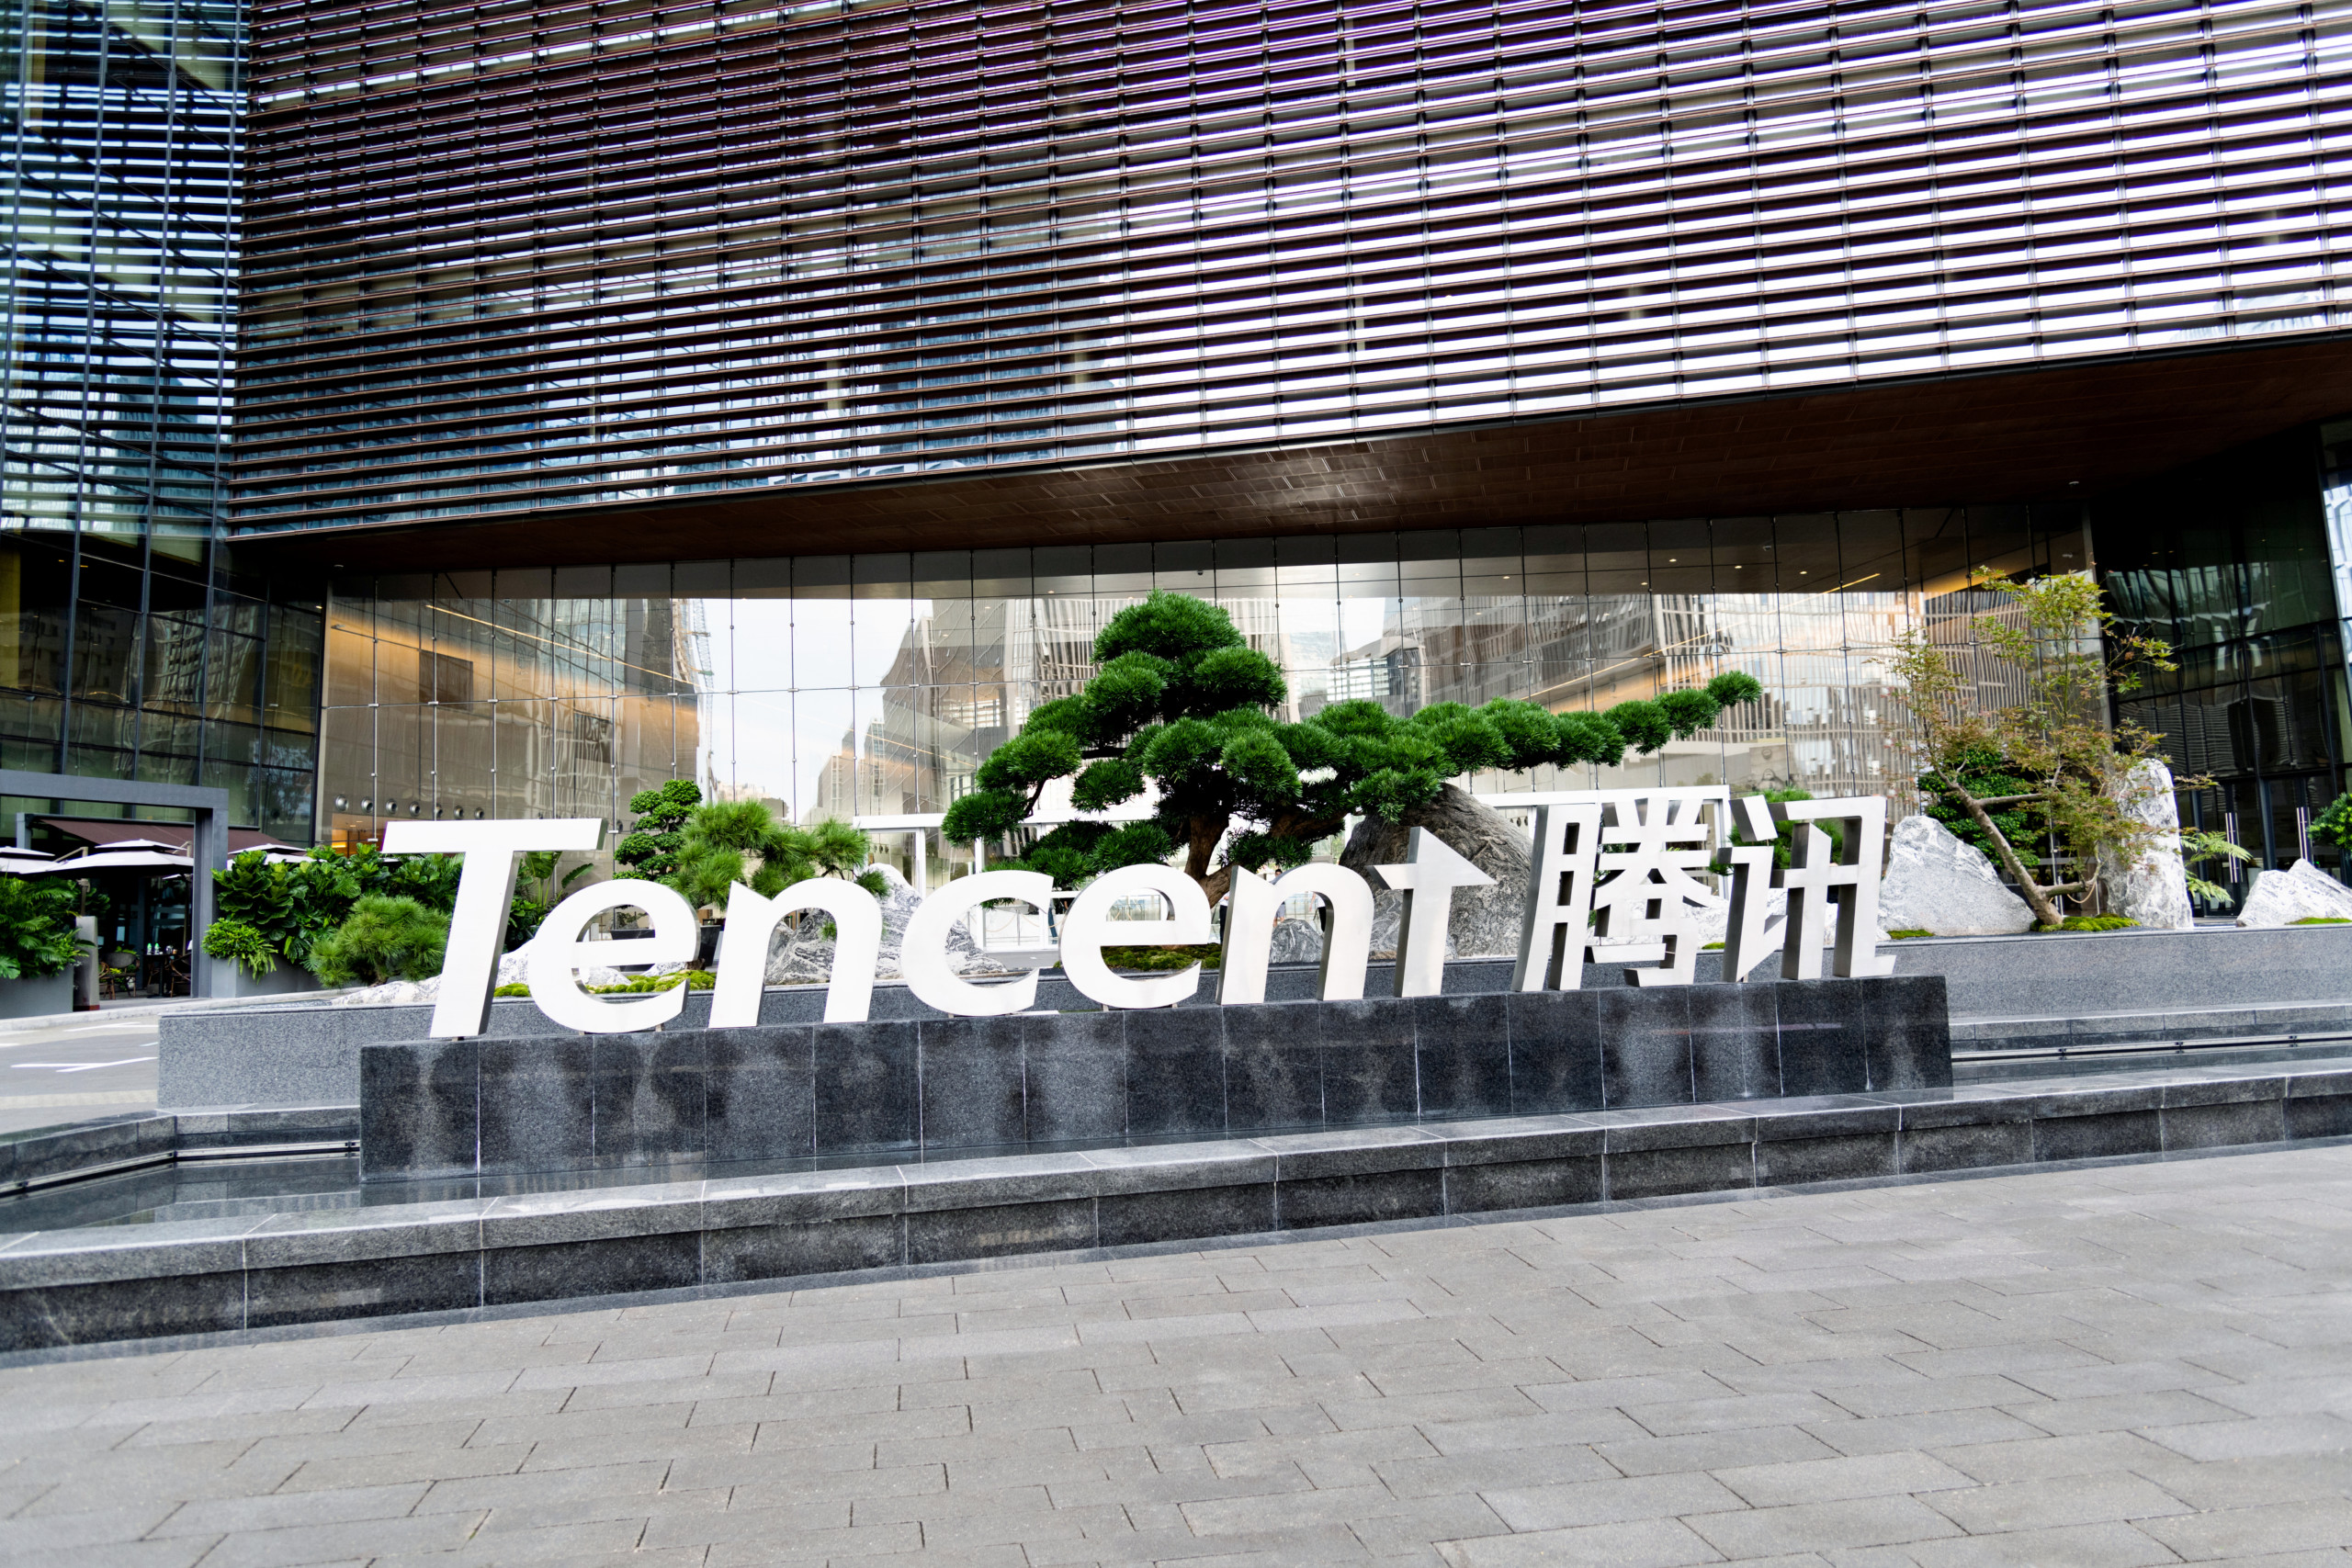 Tencent überrascht mit neuer Videospielveröffentlichung – Chancen durch Regulierungslockerung und hohe Umsatzsteigerungen